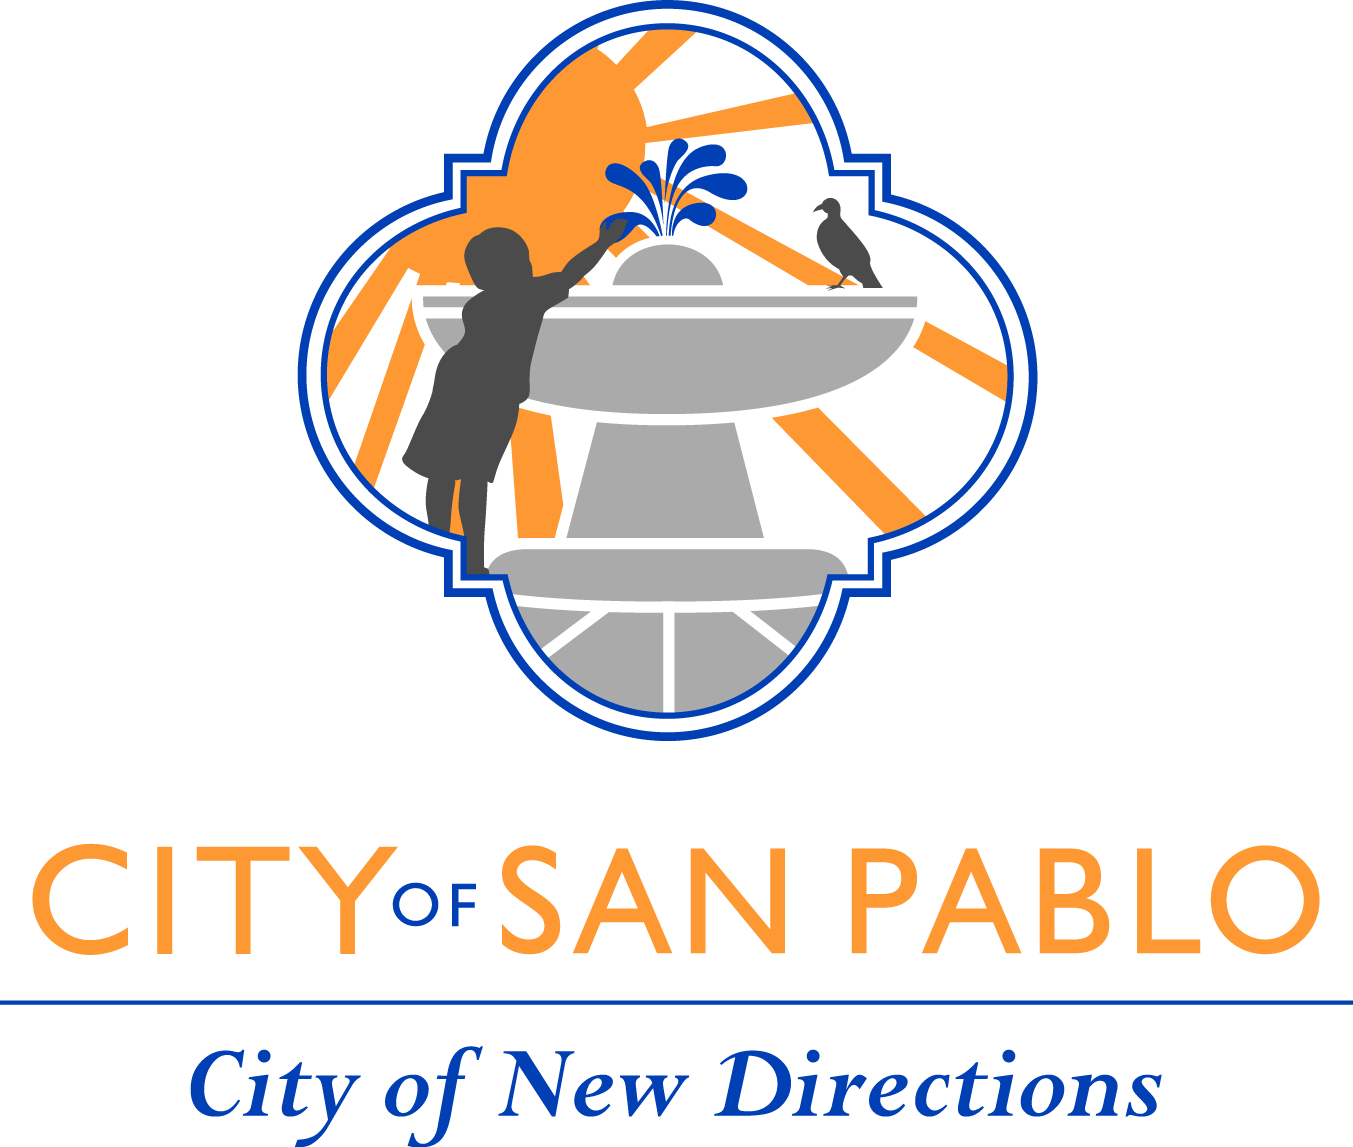 Логотип города Сан-Пабло, с надписью «Город Сан-Пабло, город нового направления», показывает изображение ребенка, птицы, солнца, фонтана.